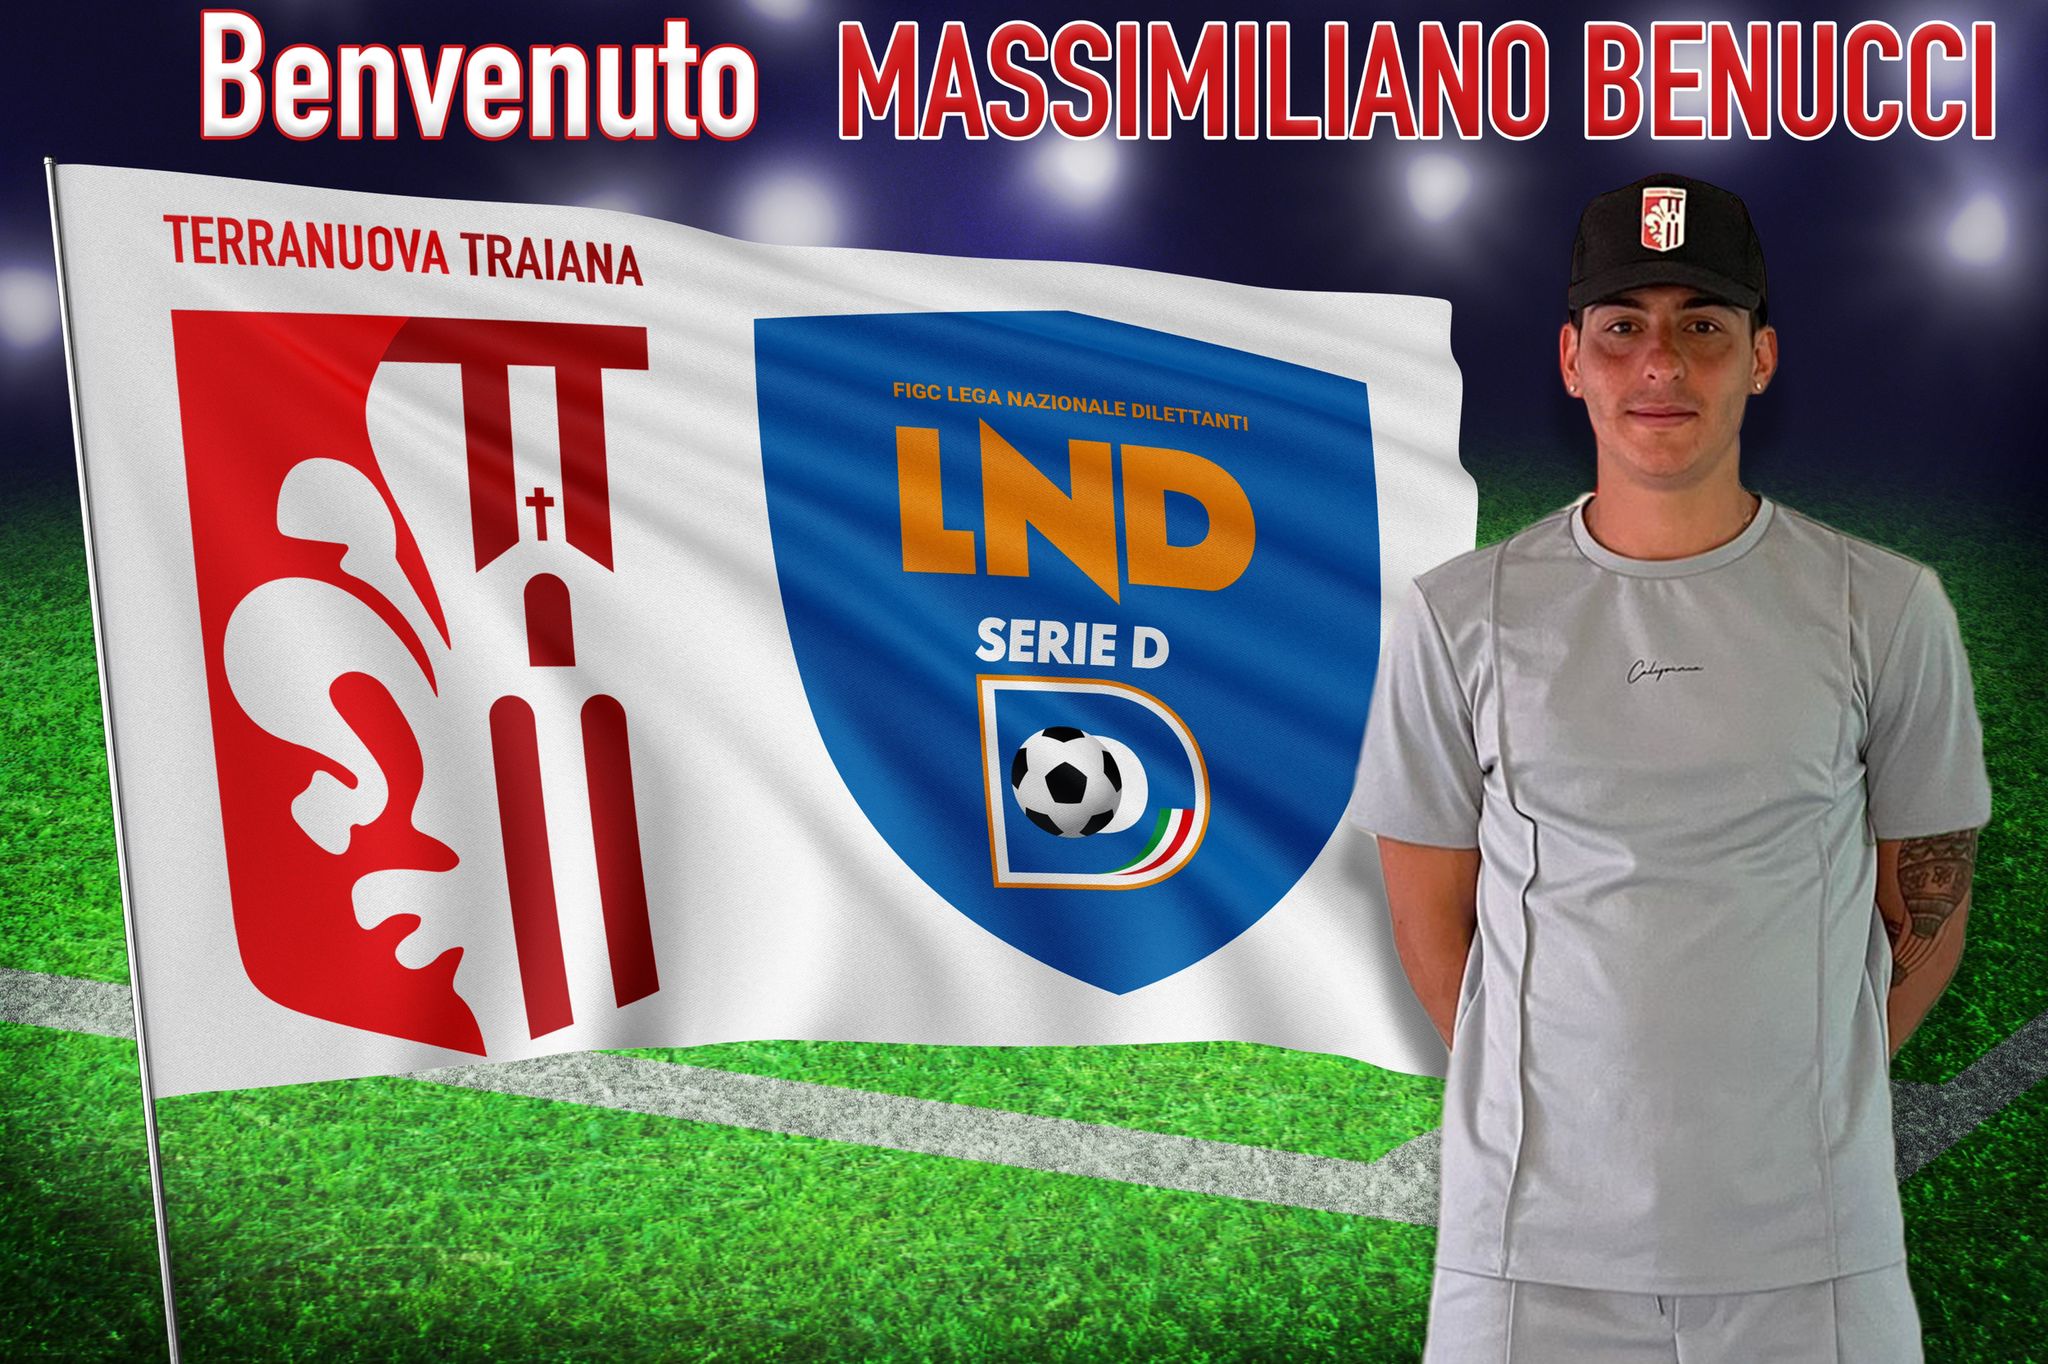 ASD Terranuova Traiana dà il benvenuto a Massimiliano Benucci